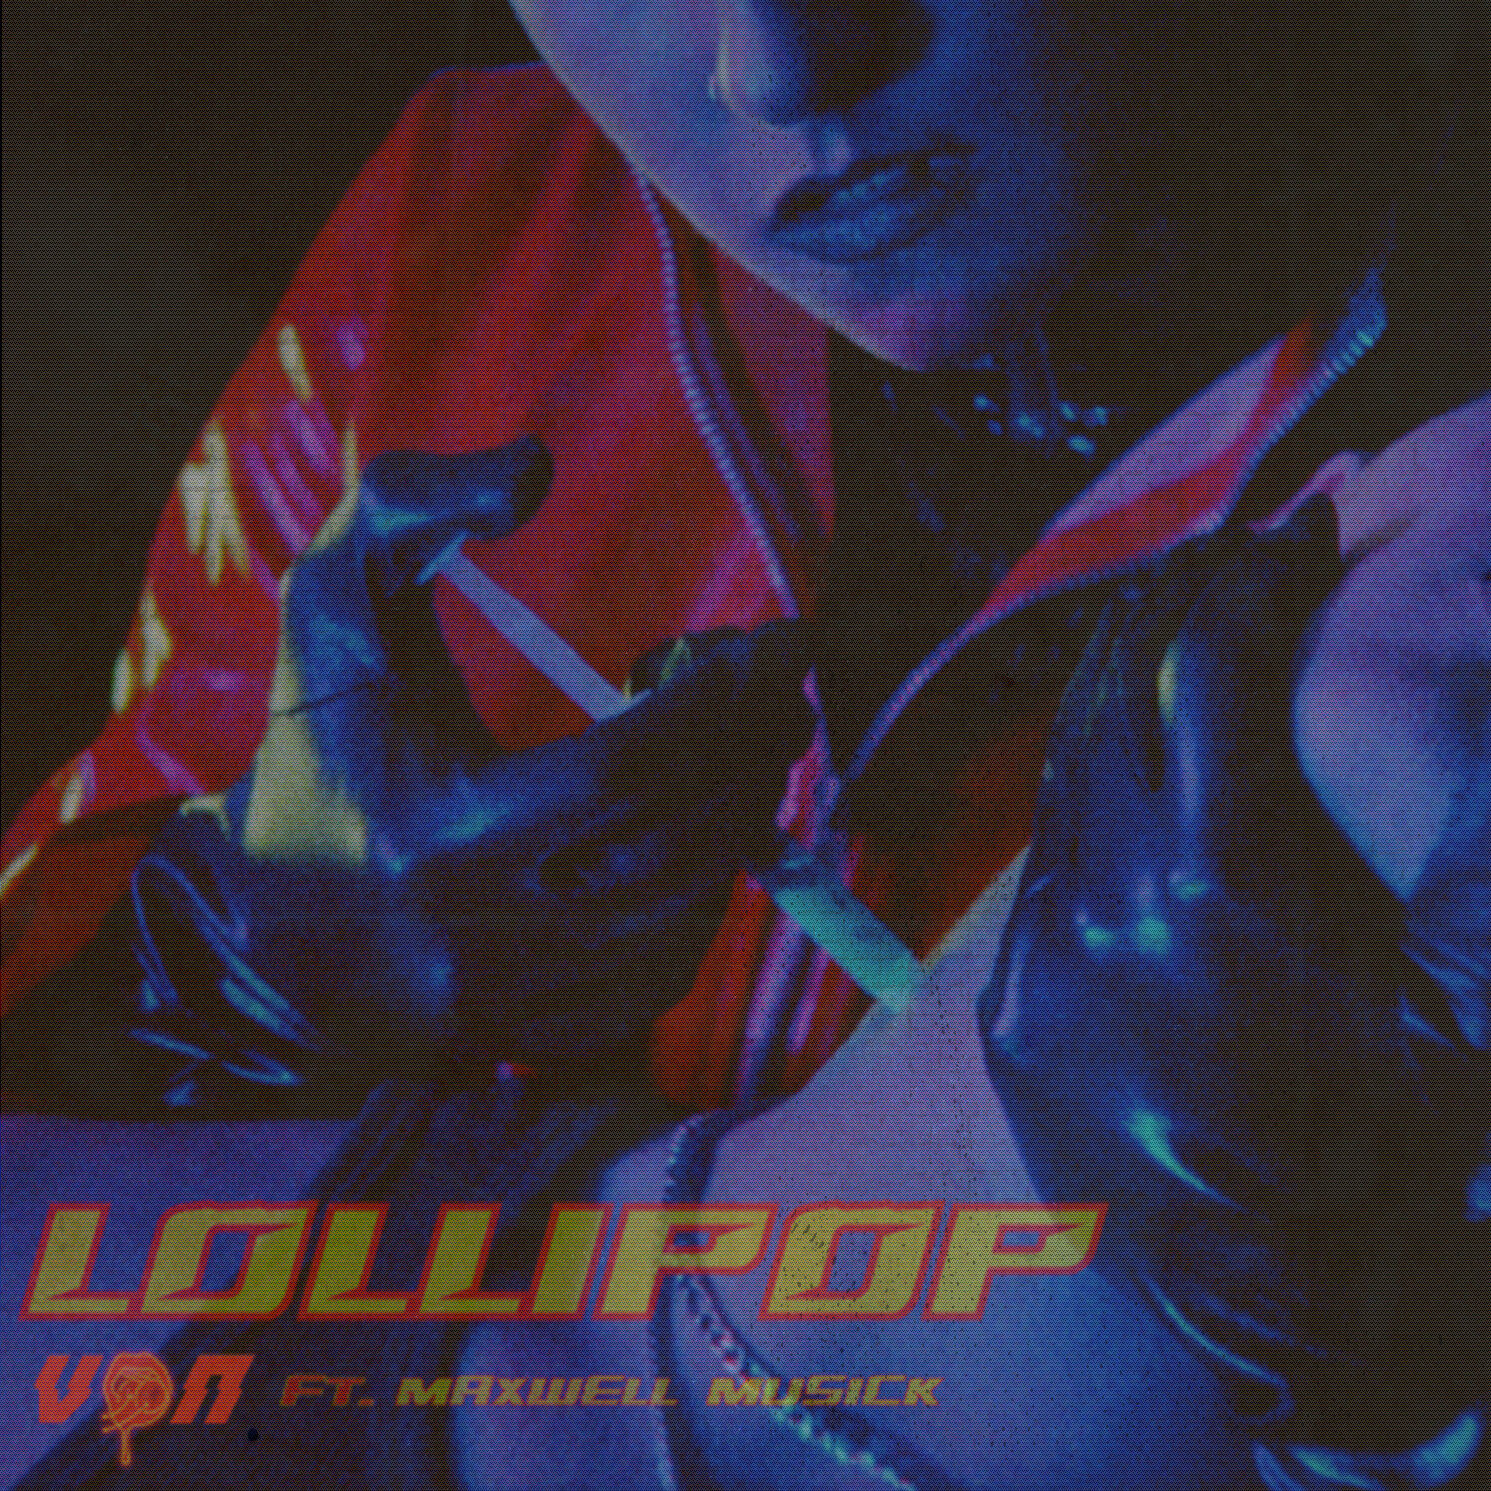 Von - "Lollipop" — music video